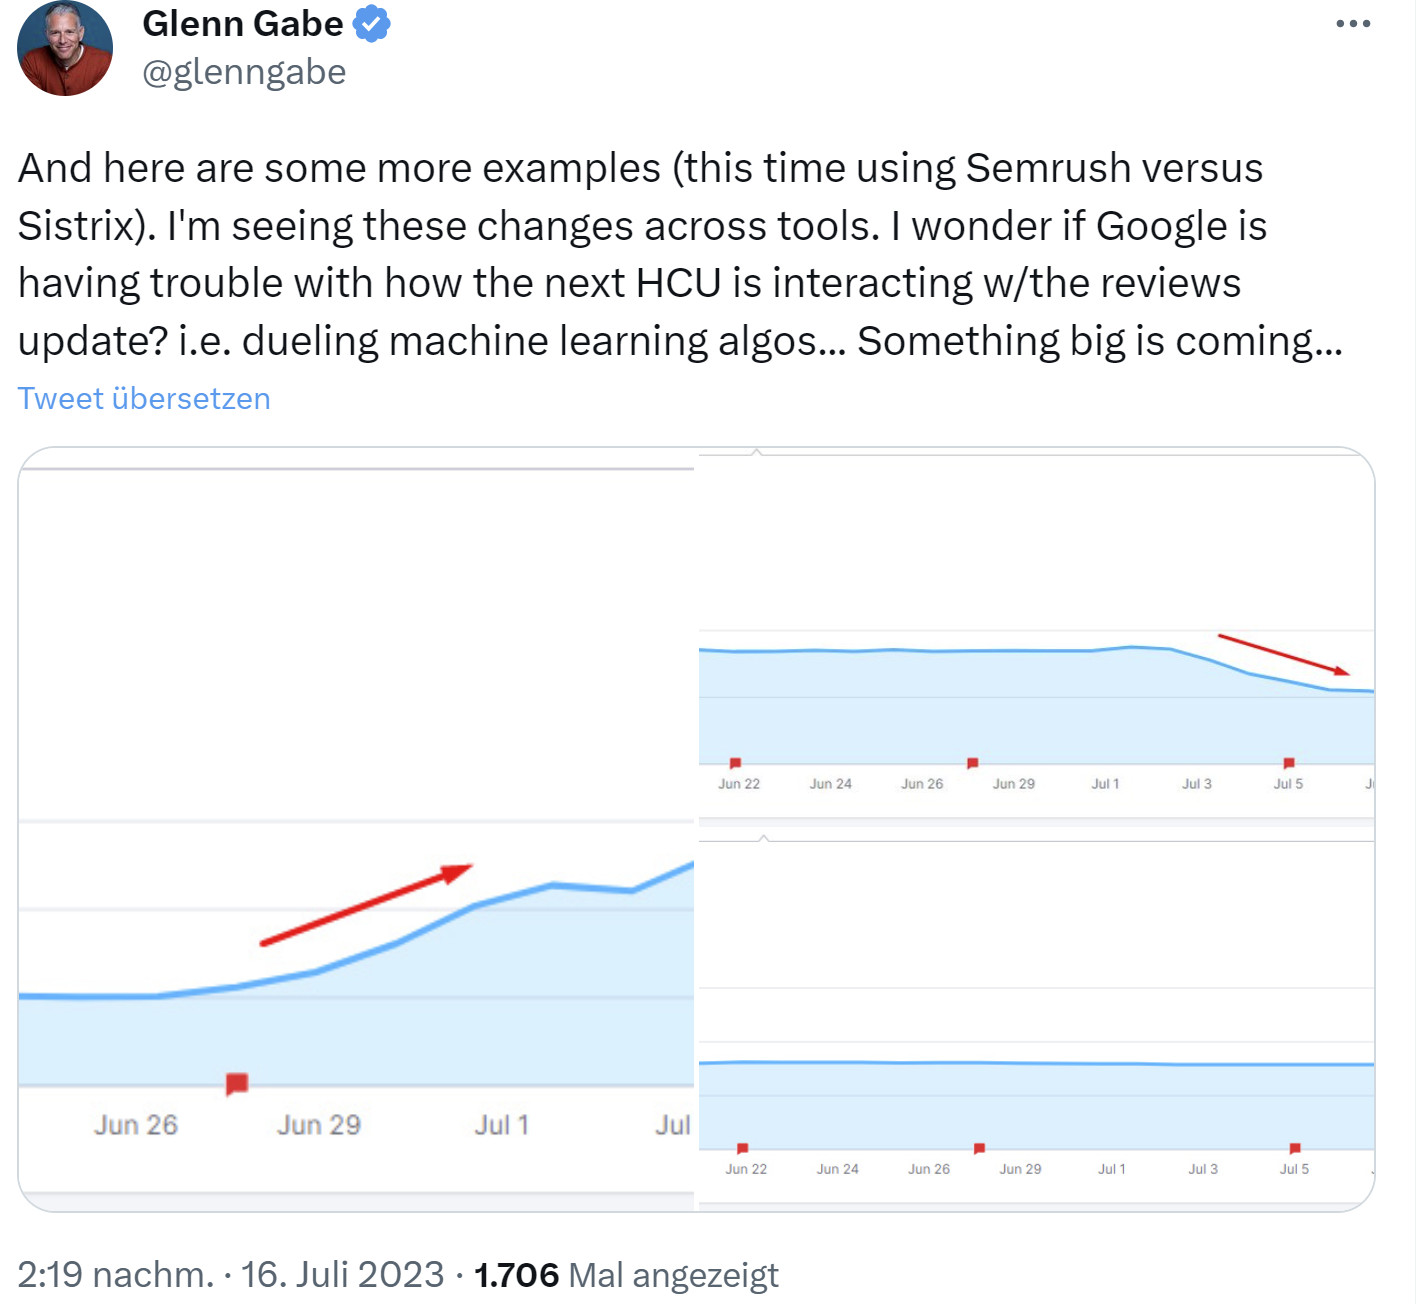 Plötzliche Veränderung der Sichtbarkeit am 17.07.23 - Beispiele von Glenn Gabe auf Twitter